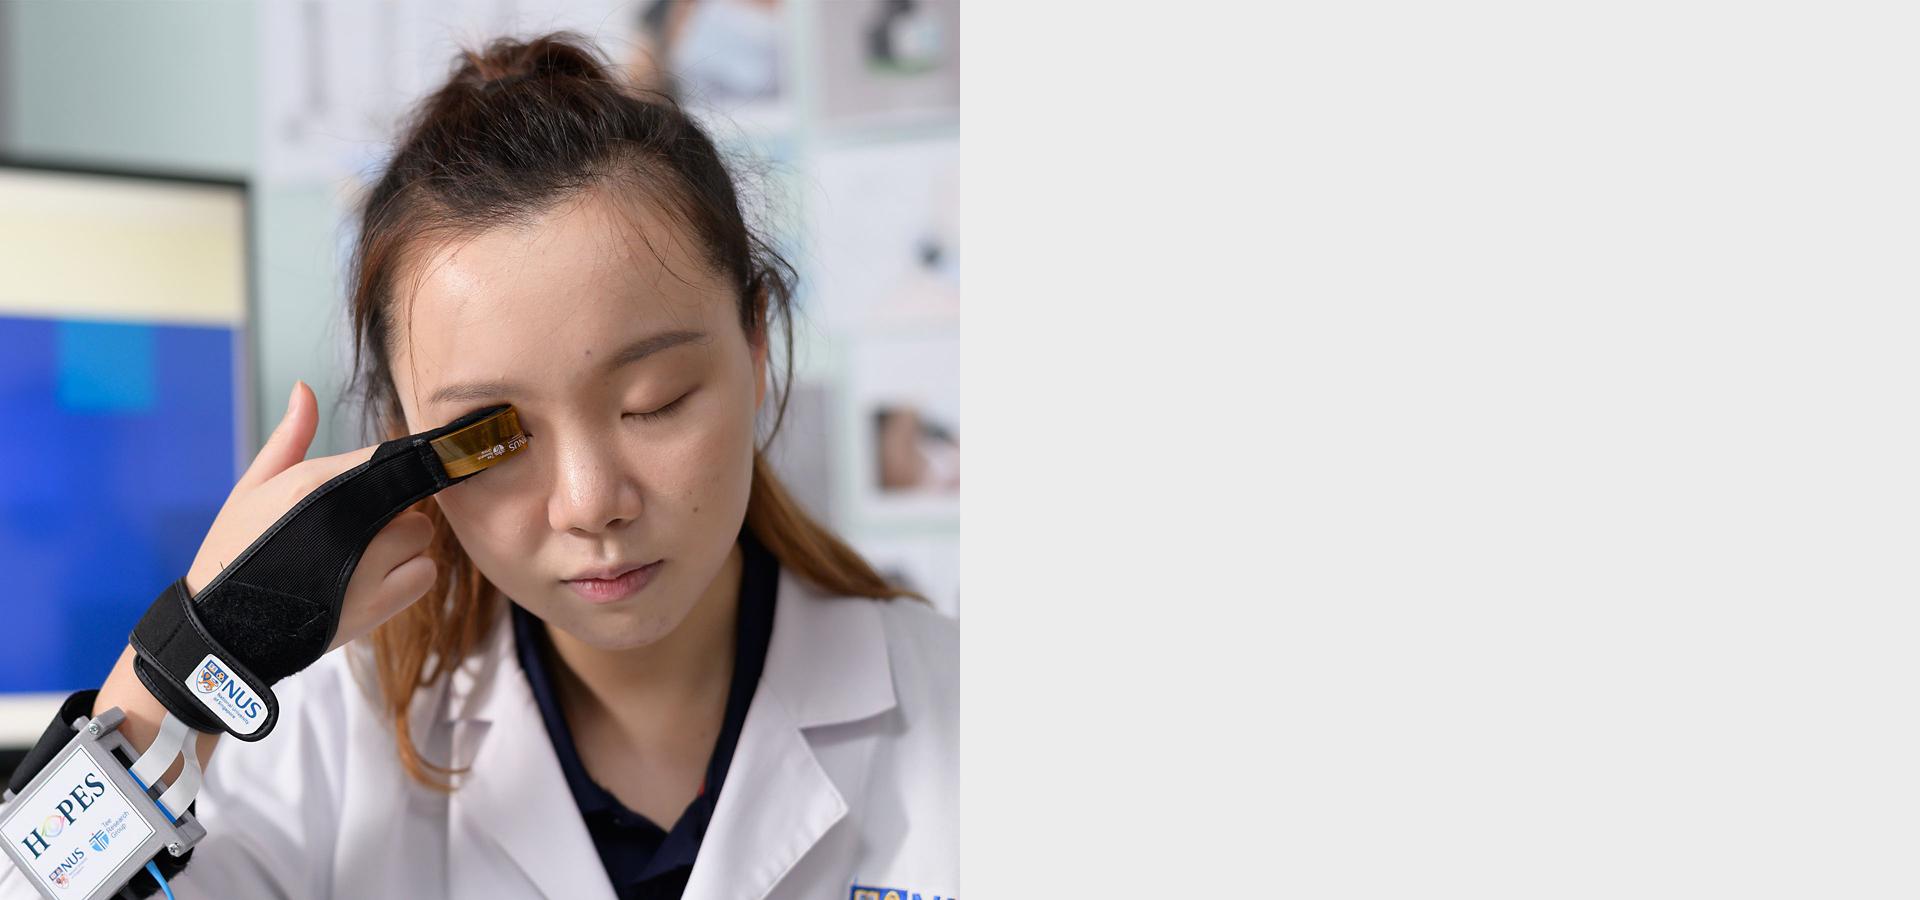 Suletud silmadega naine hoidmas seadet, mis glaukoomi avastamiseks analüüsib andmeid Bluetoothi kaudu